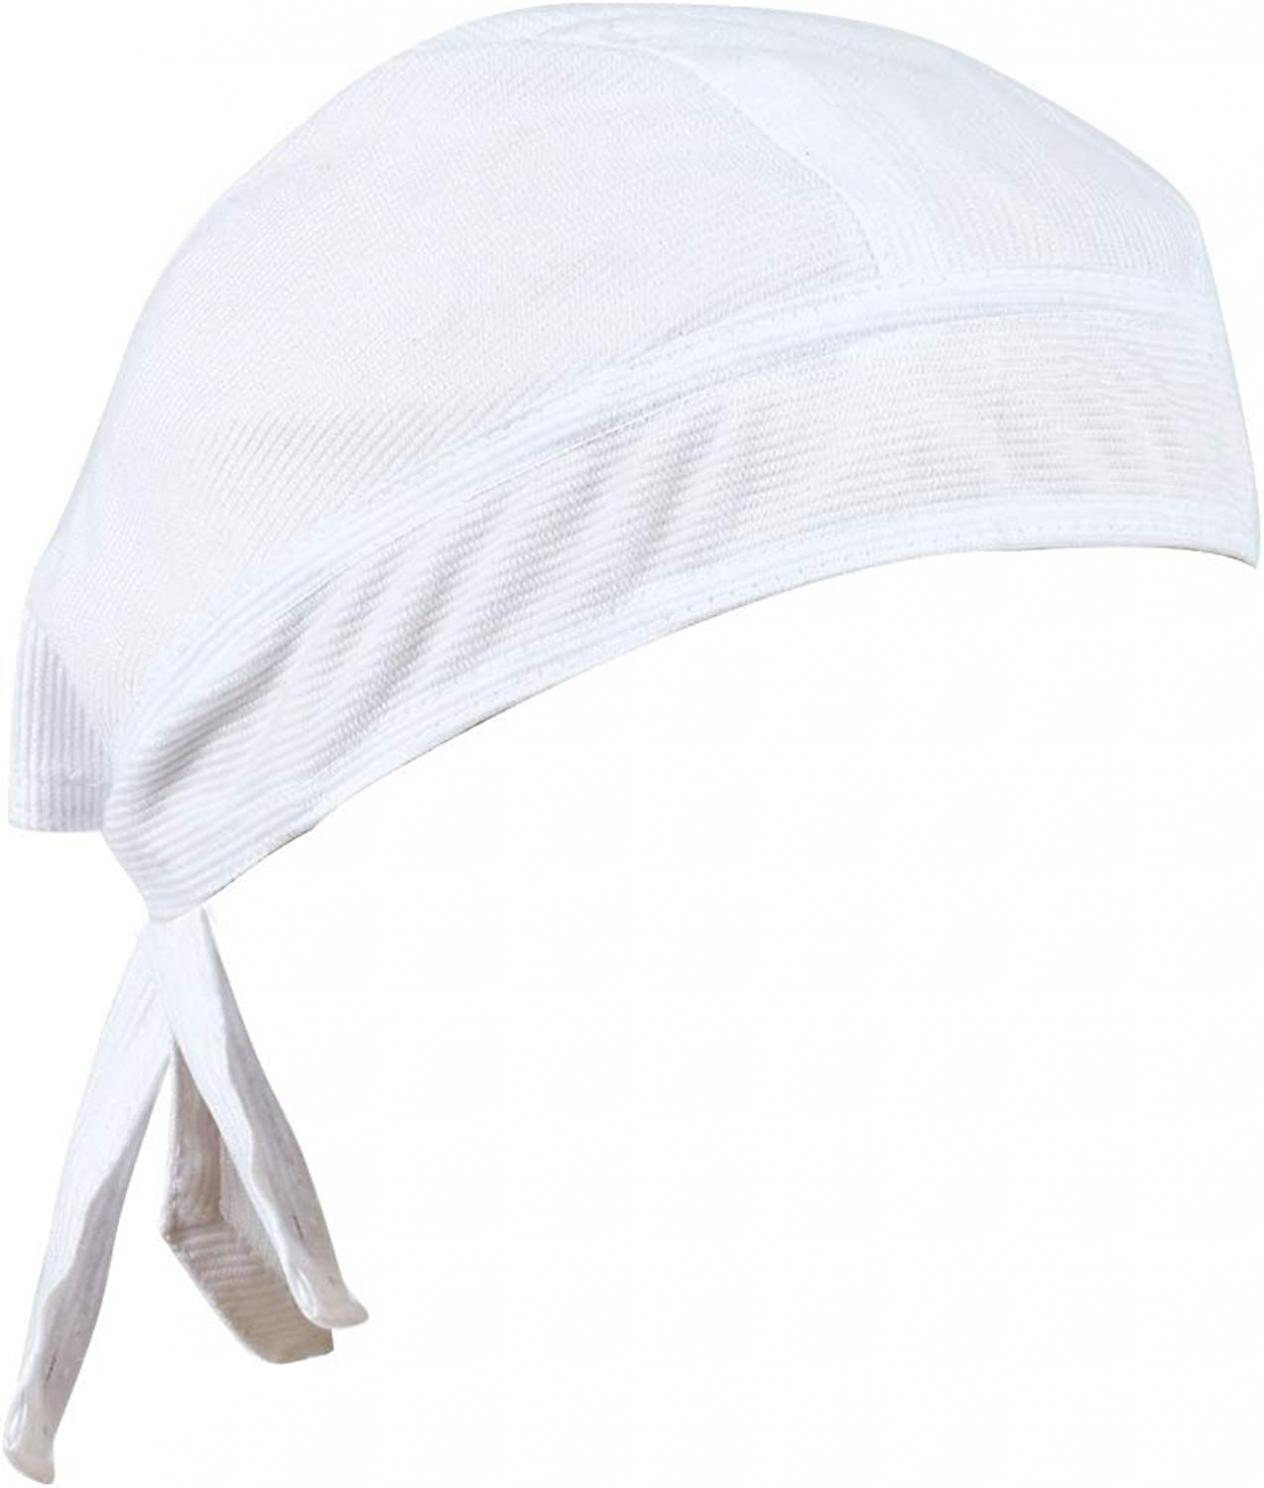 BISMAADH Sweat Wicking Cooling Helmet Liner -patka Under Helmet,Bandana,Cap (Cottroise)